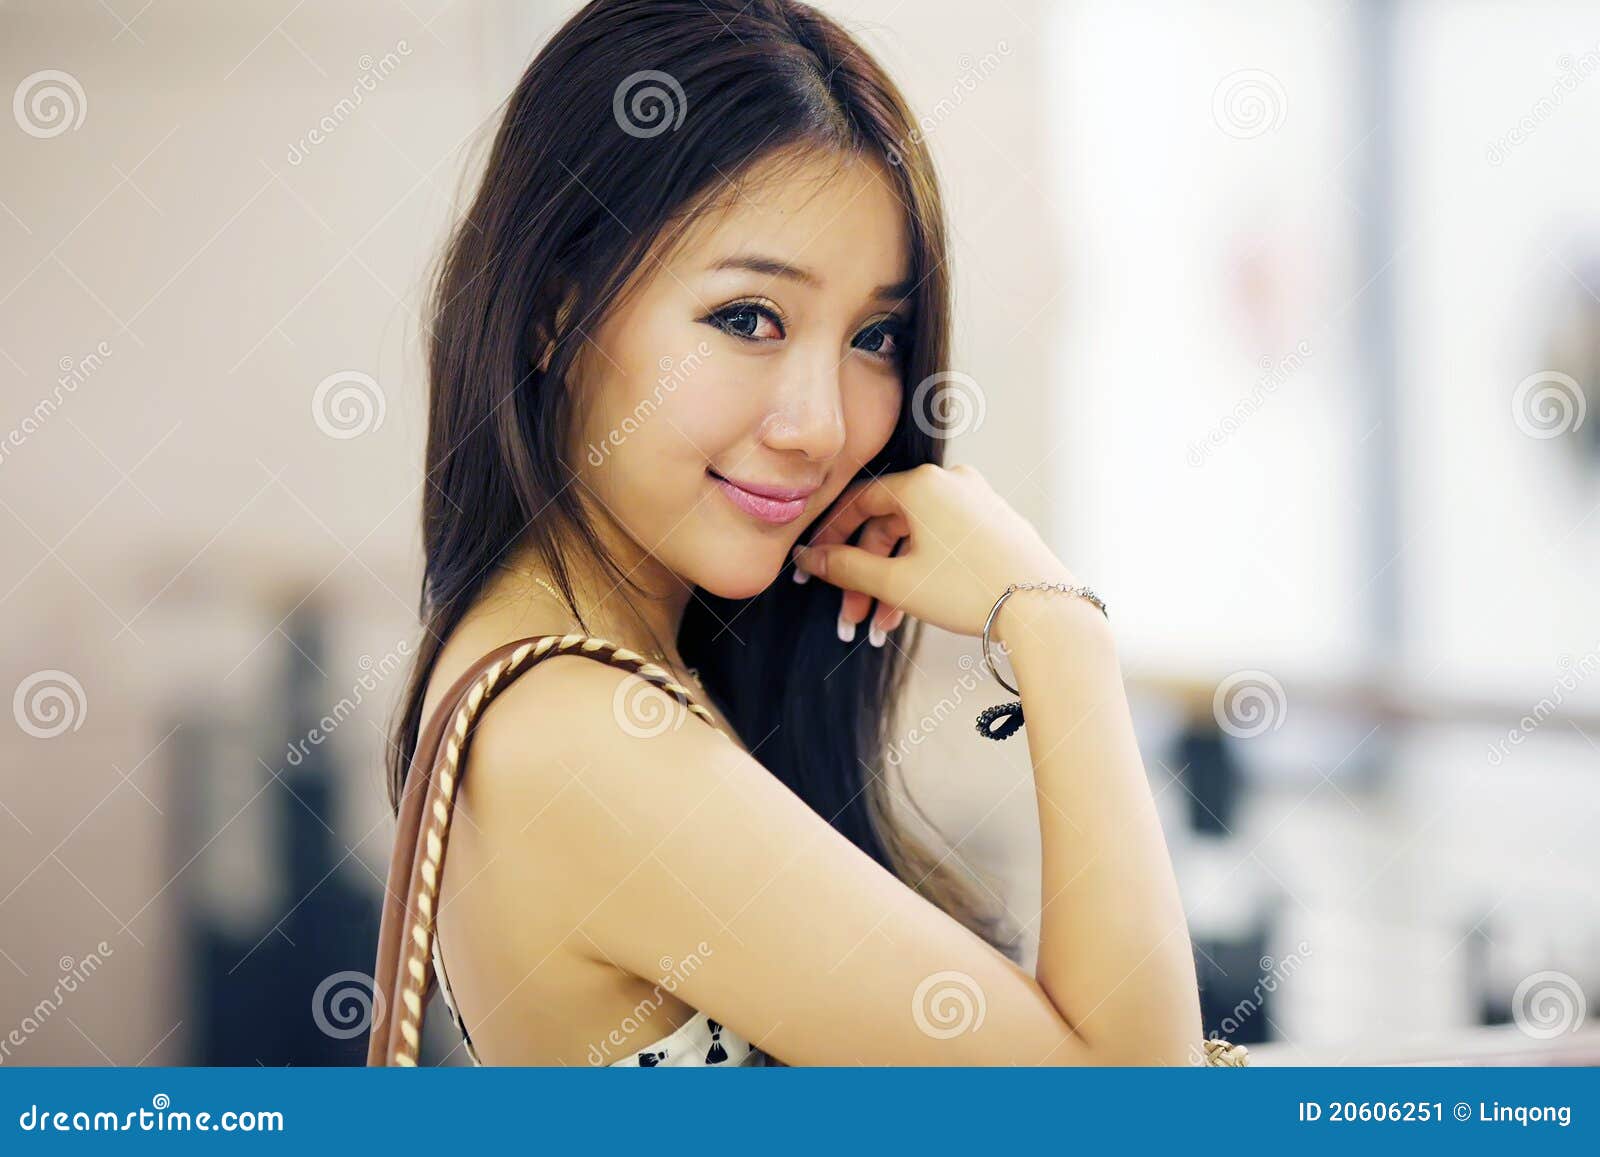 精选亚洲美女模特桌面壁纸_360社区